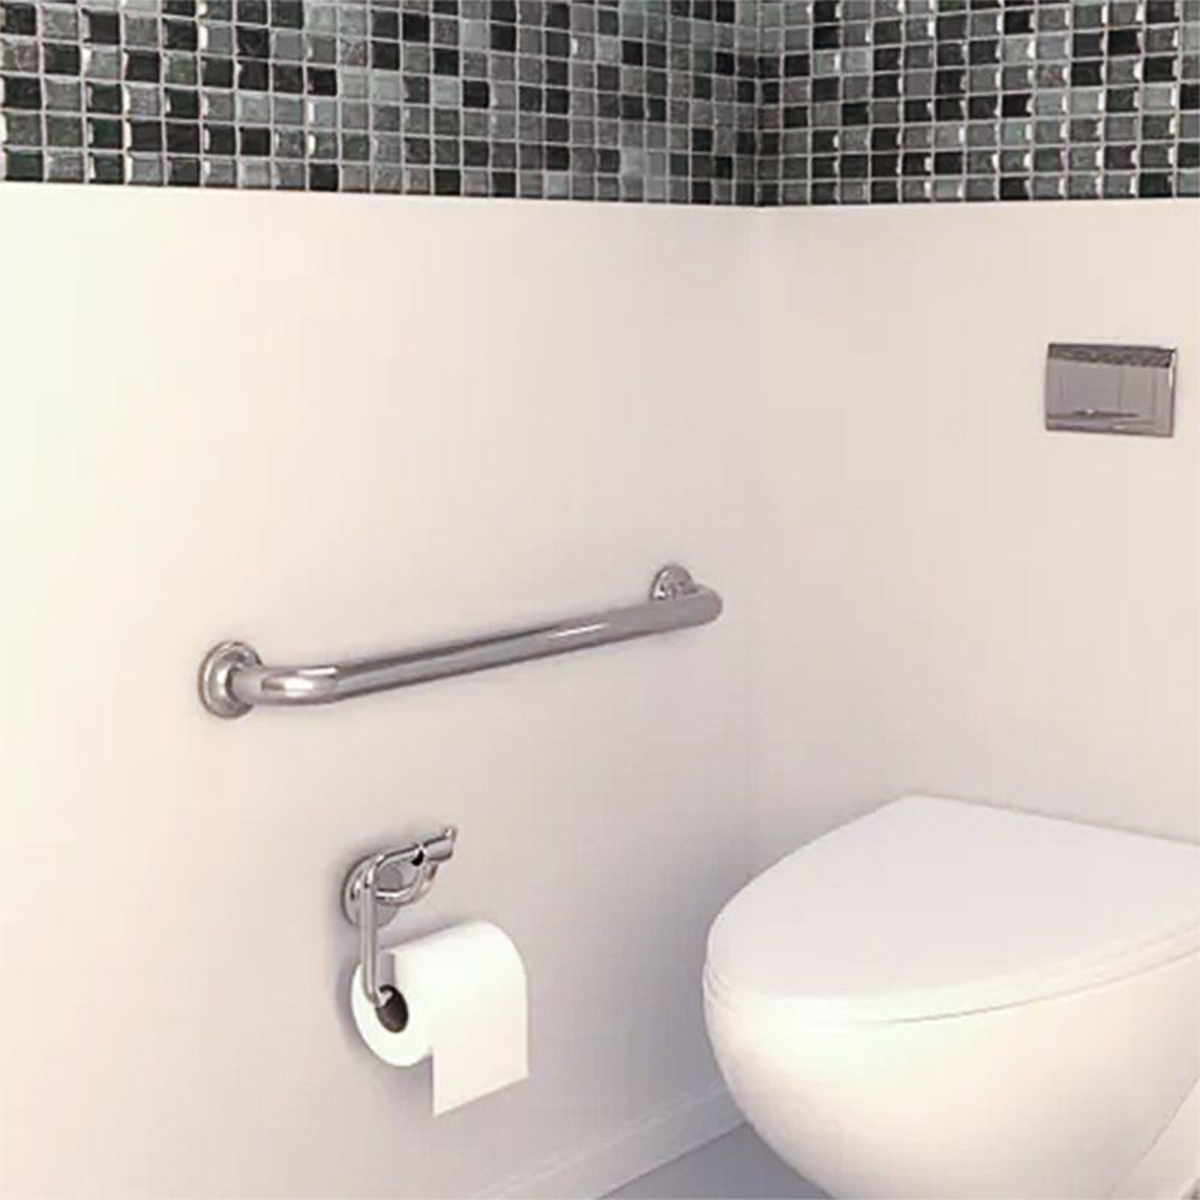 Alça de Apoio Inox Barra 30cm Segurança Idoso Gestante Banheiro Box Parede Suporte Acessibilidade Resistente Corrimao Parede